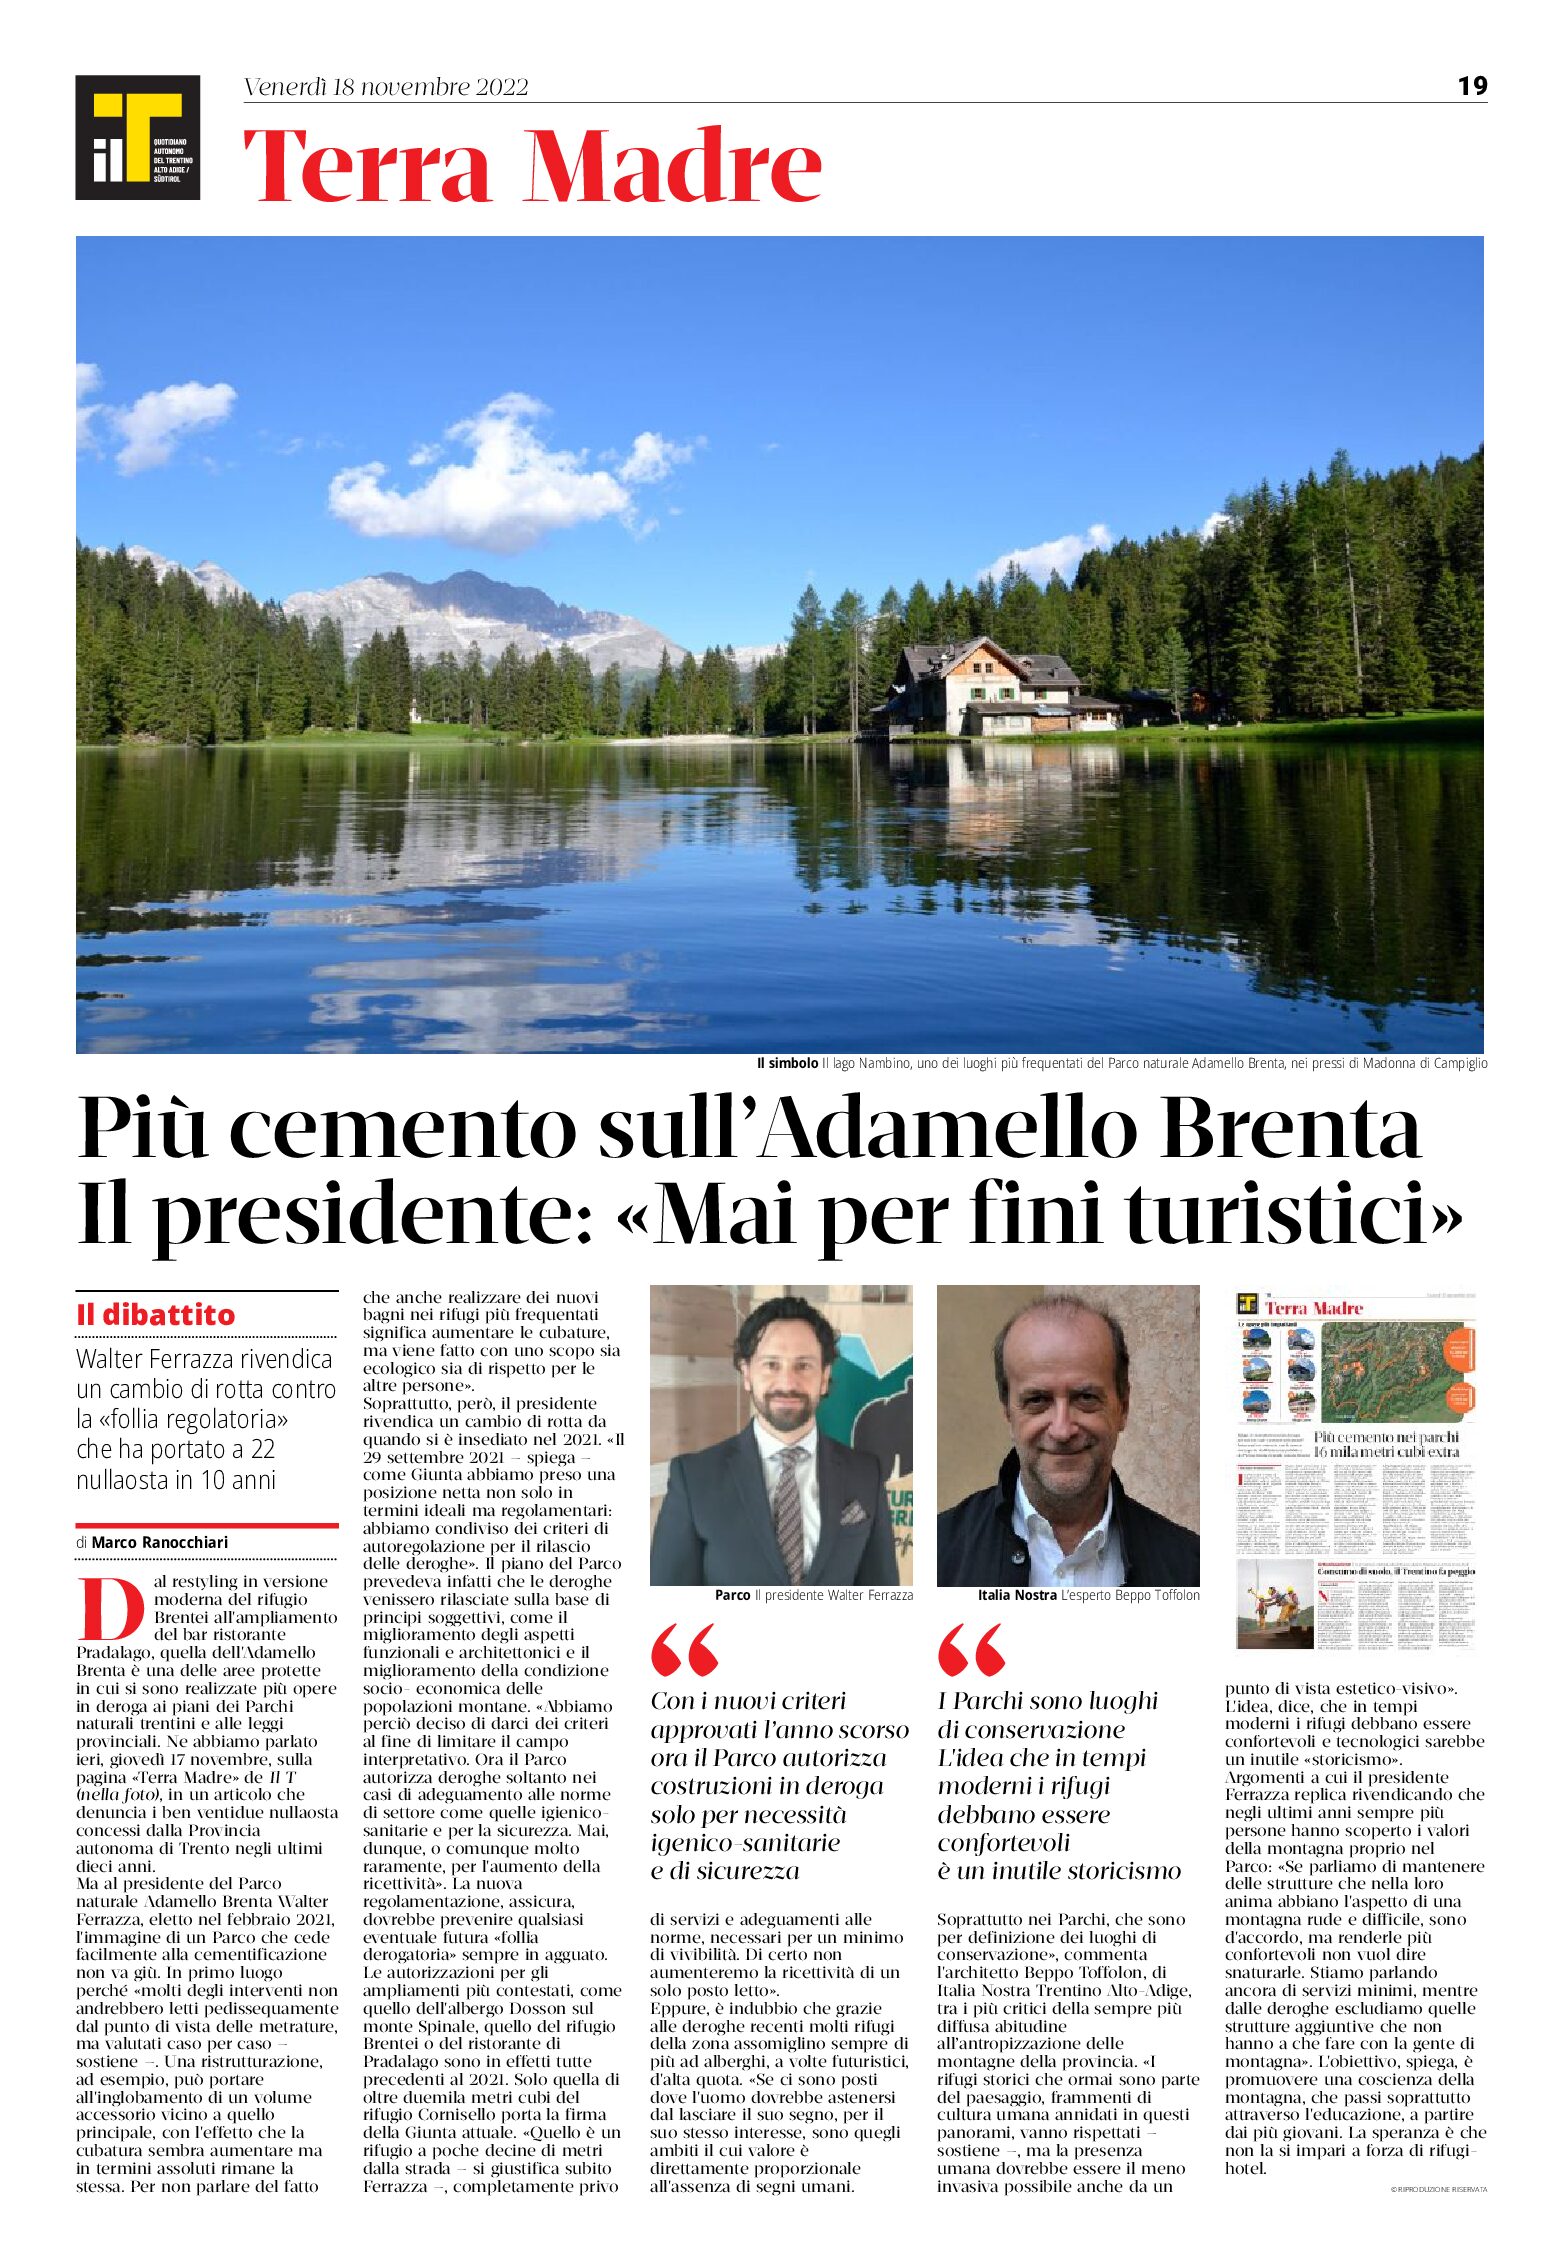 Dibattito: più cemento sull’Adamello Brenta. Il presidente “mai per fini turistici”